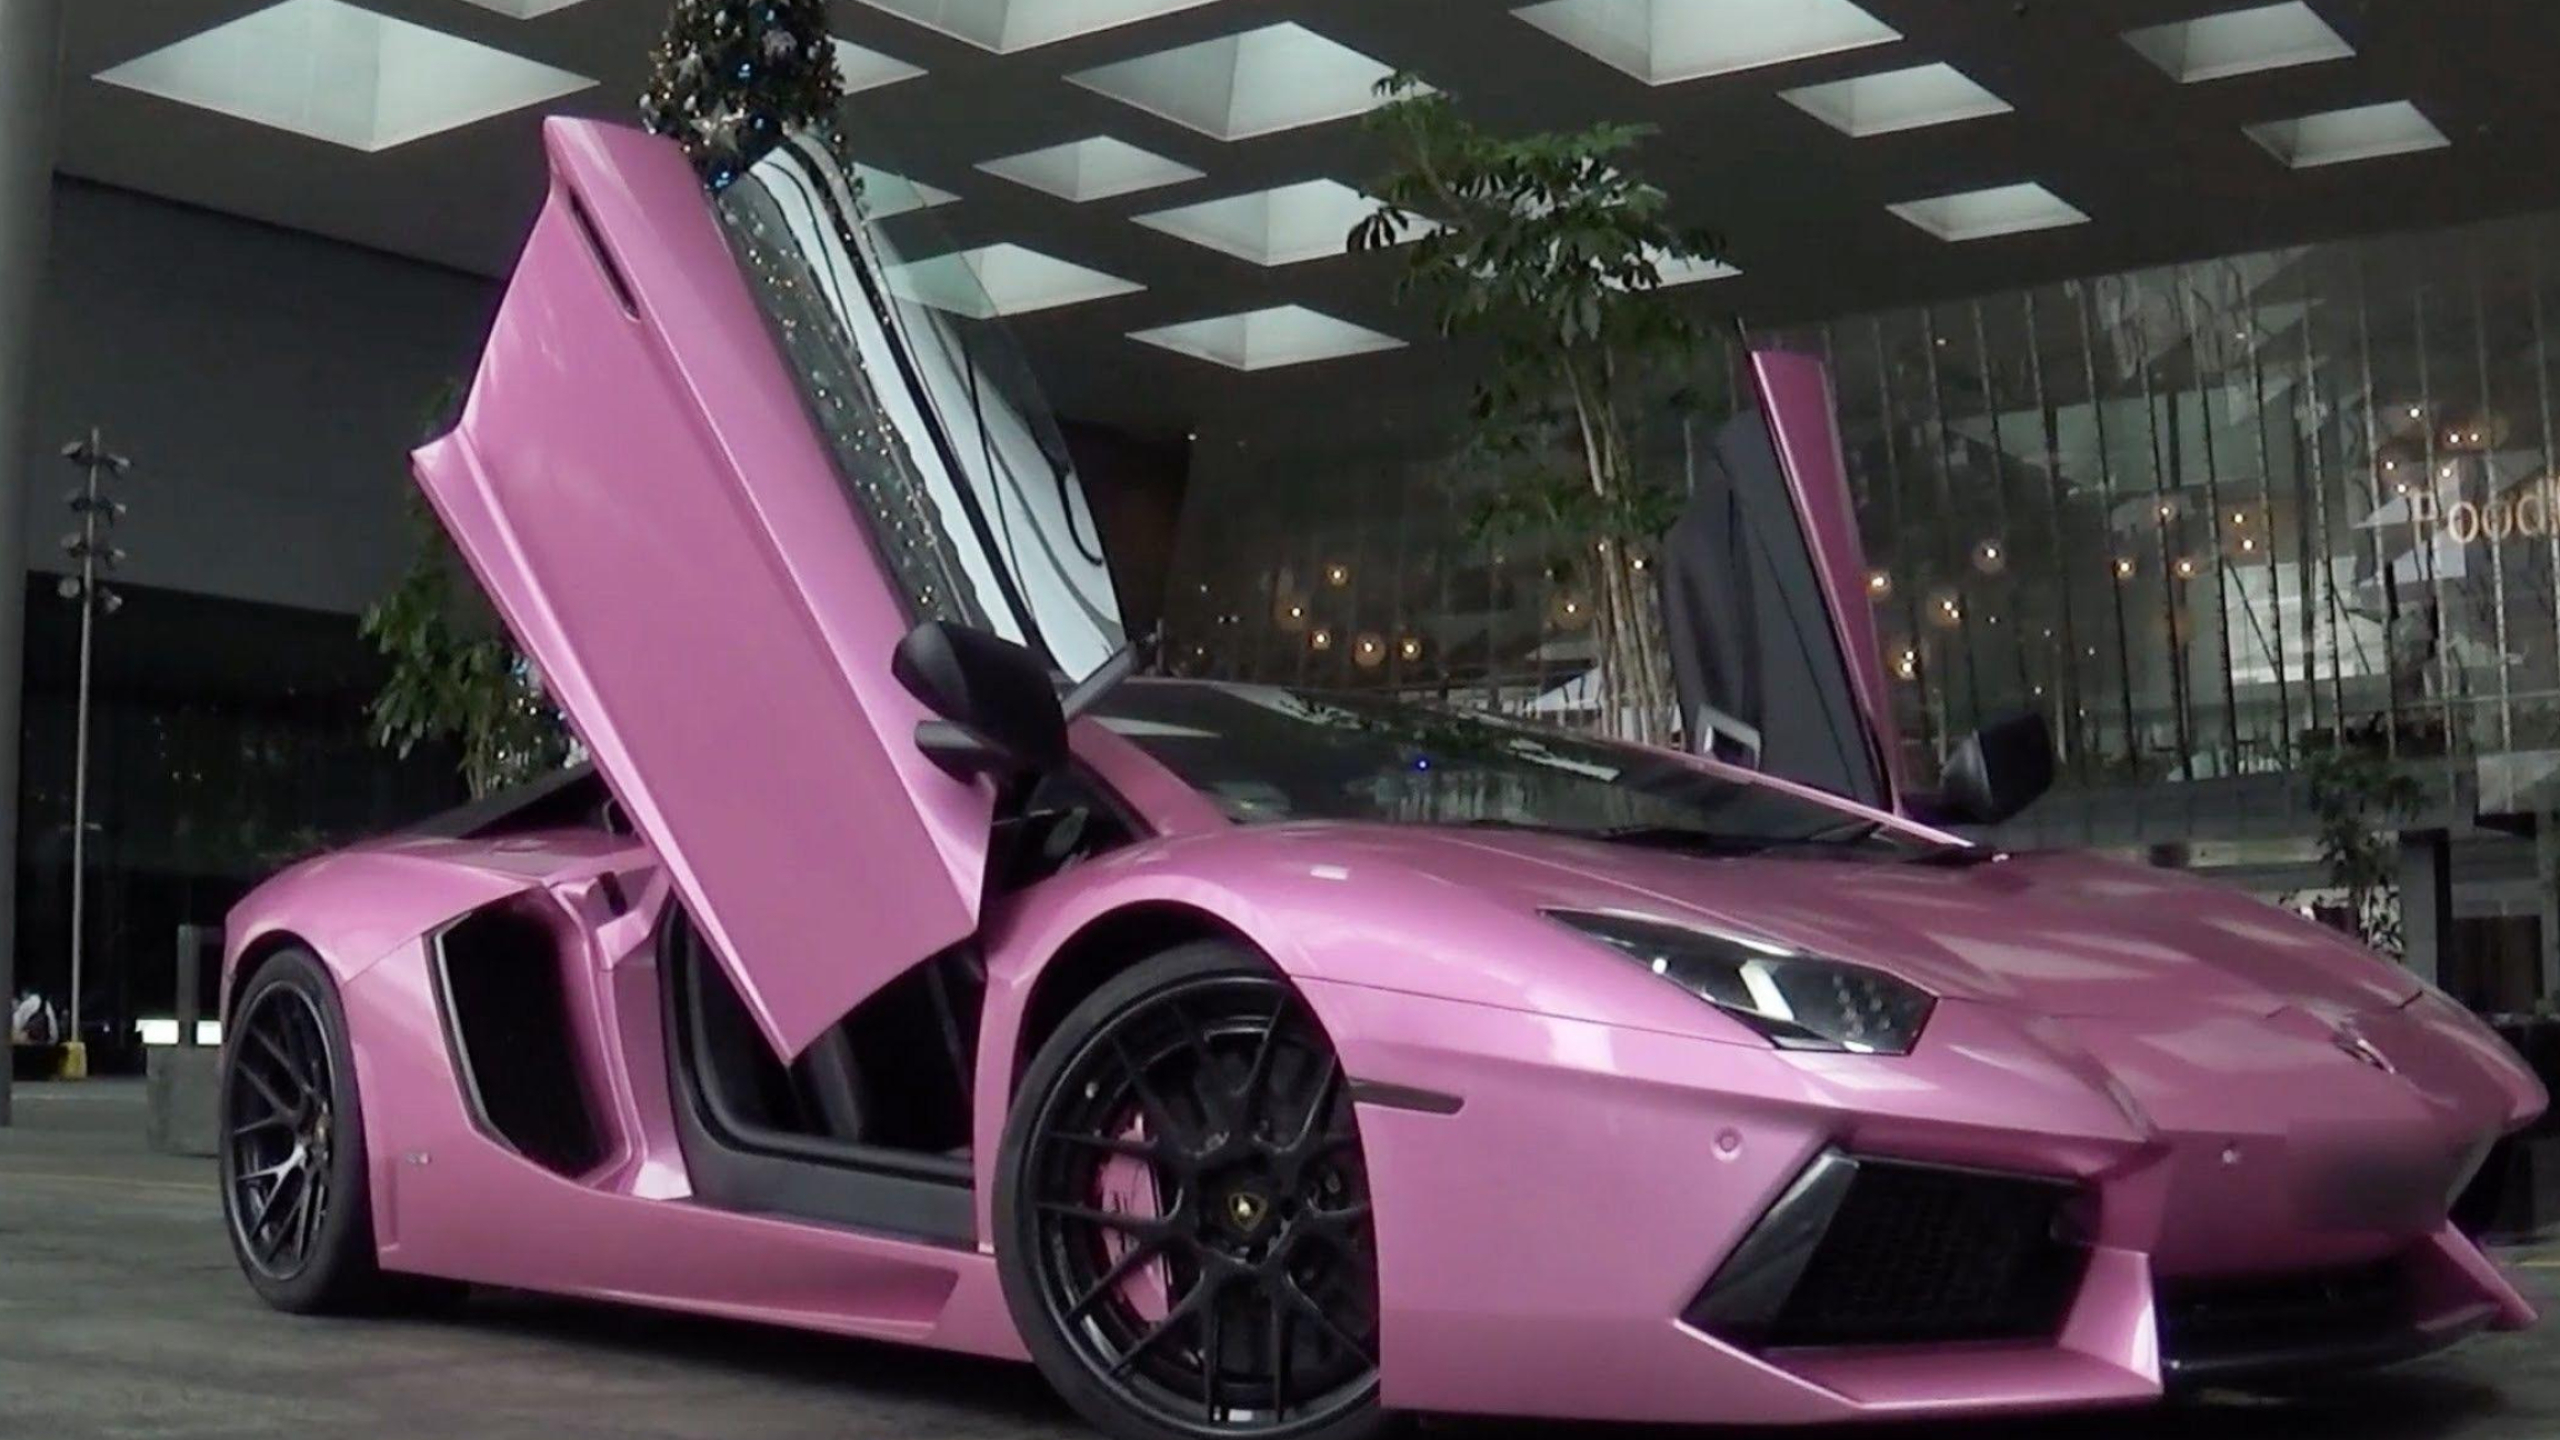 2560x1440 Pink Lamborghini Wallpapers